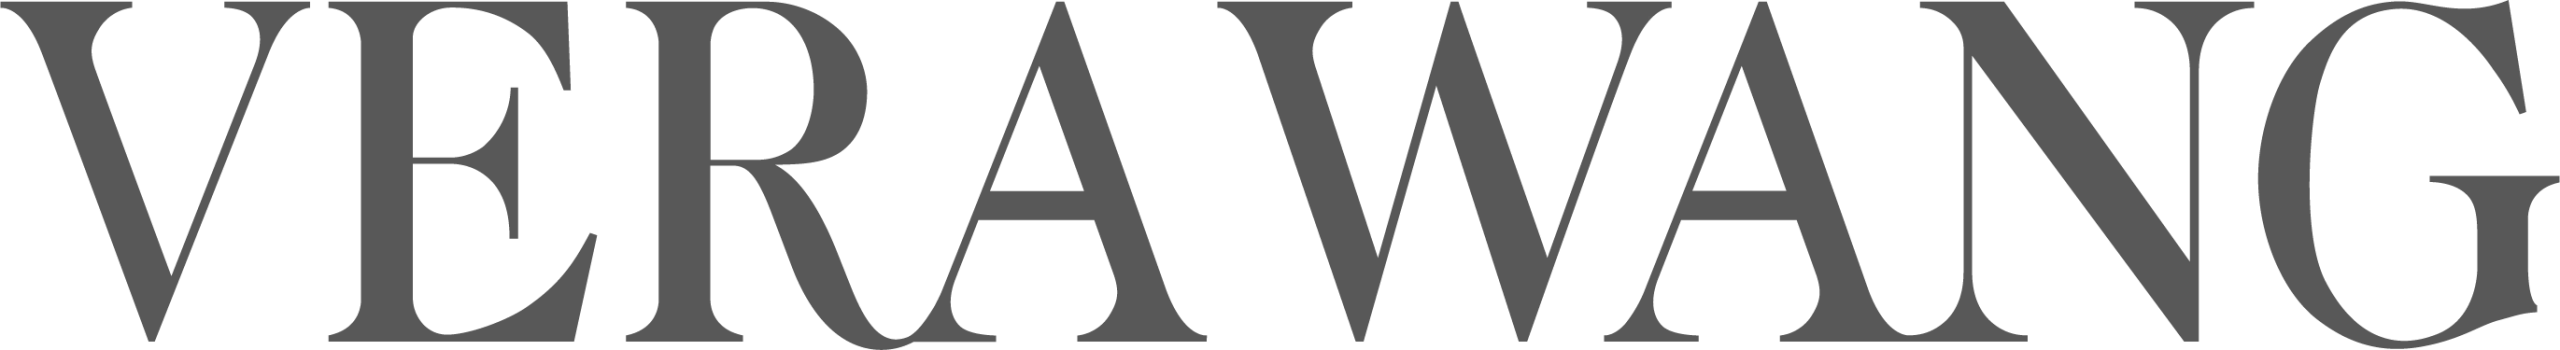 vera wang logo scaled